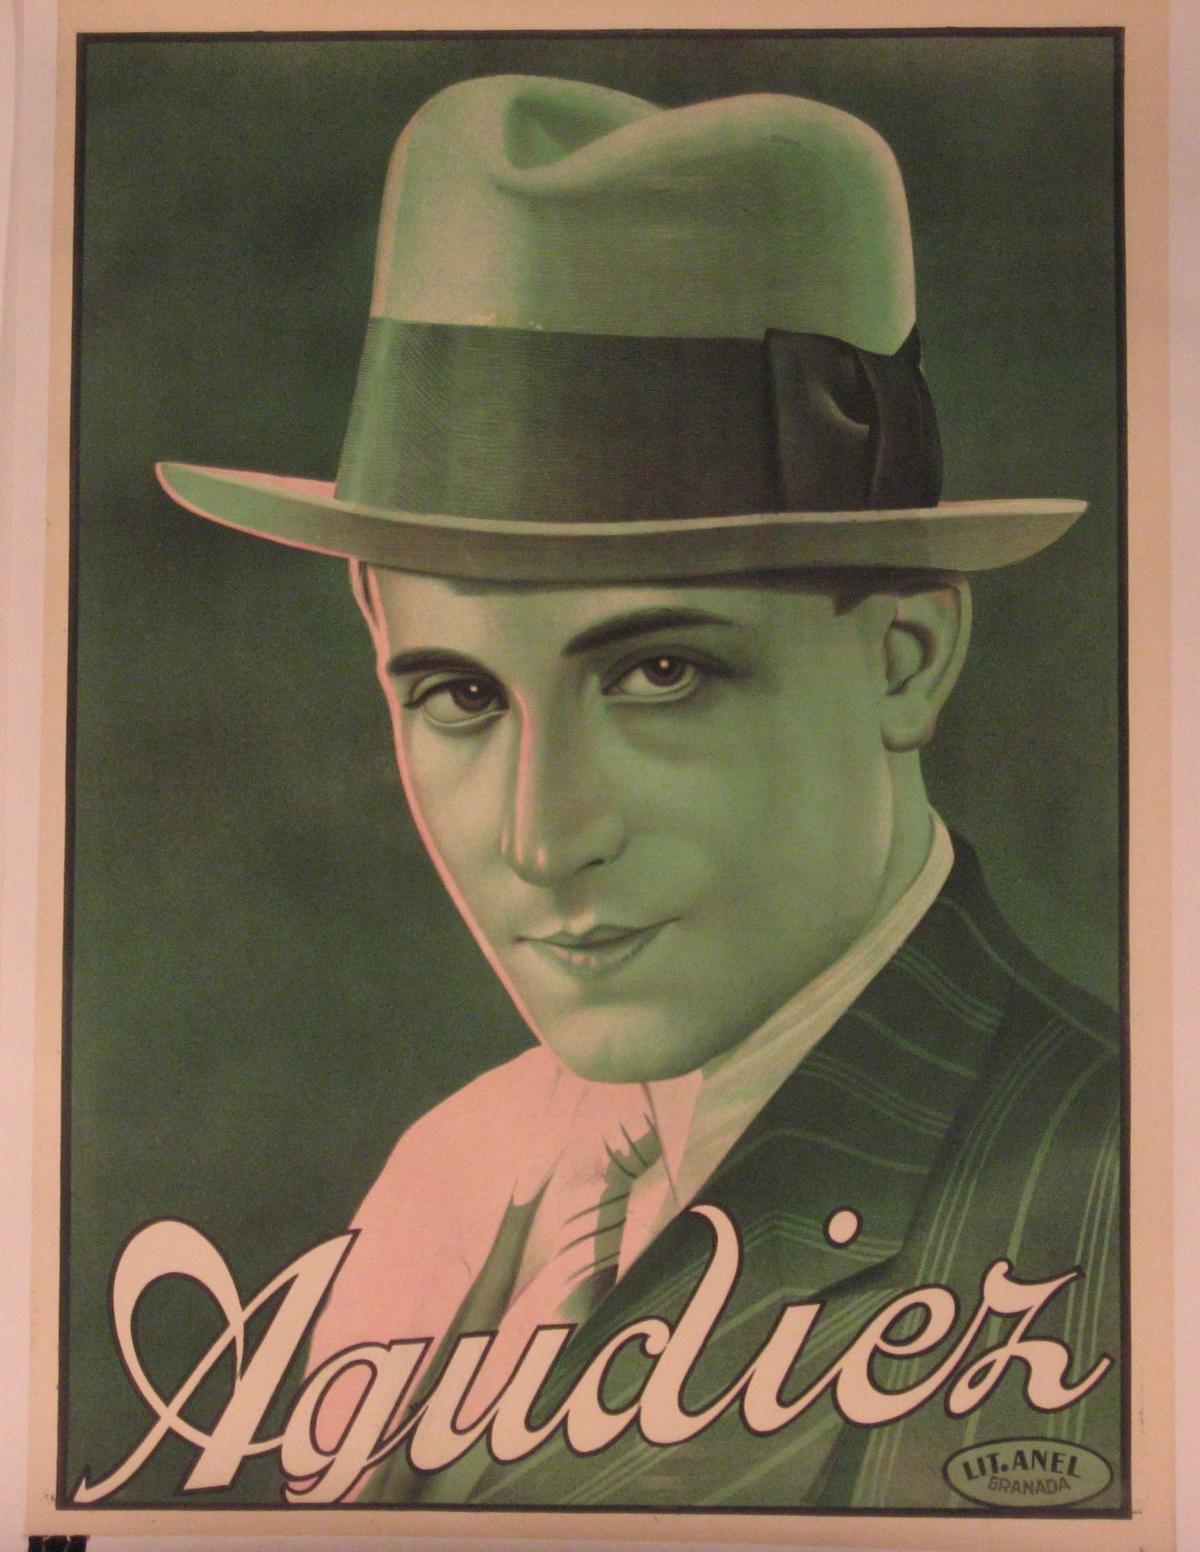 Künstler: Lithographie von Anel, Granada

Entstehungszeit: ca. 1920

Medium: Original Steinlithographie Vintage Poster

Größe: 32